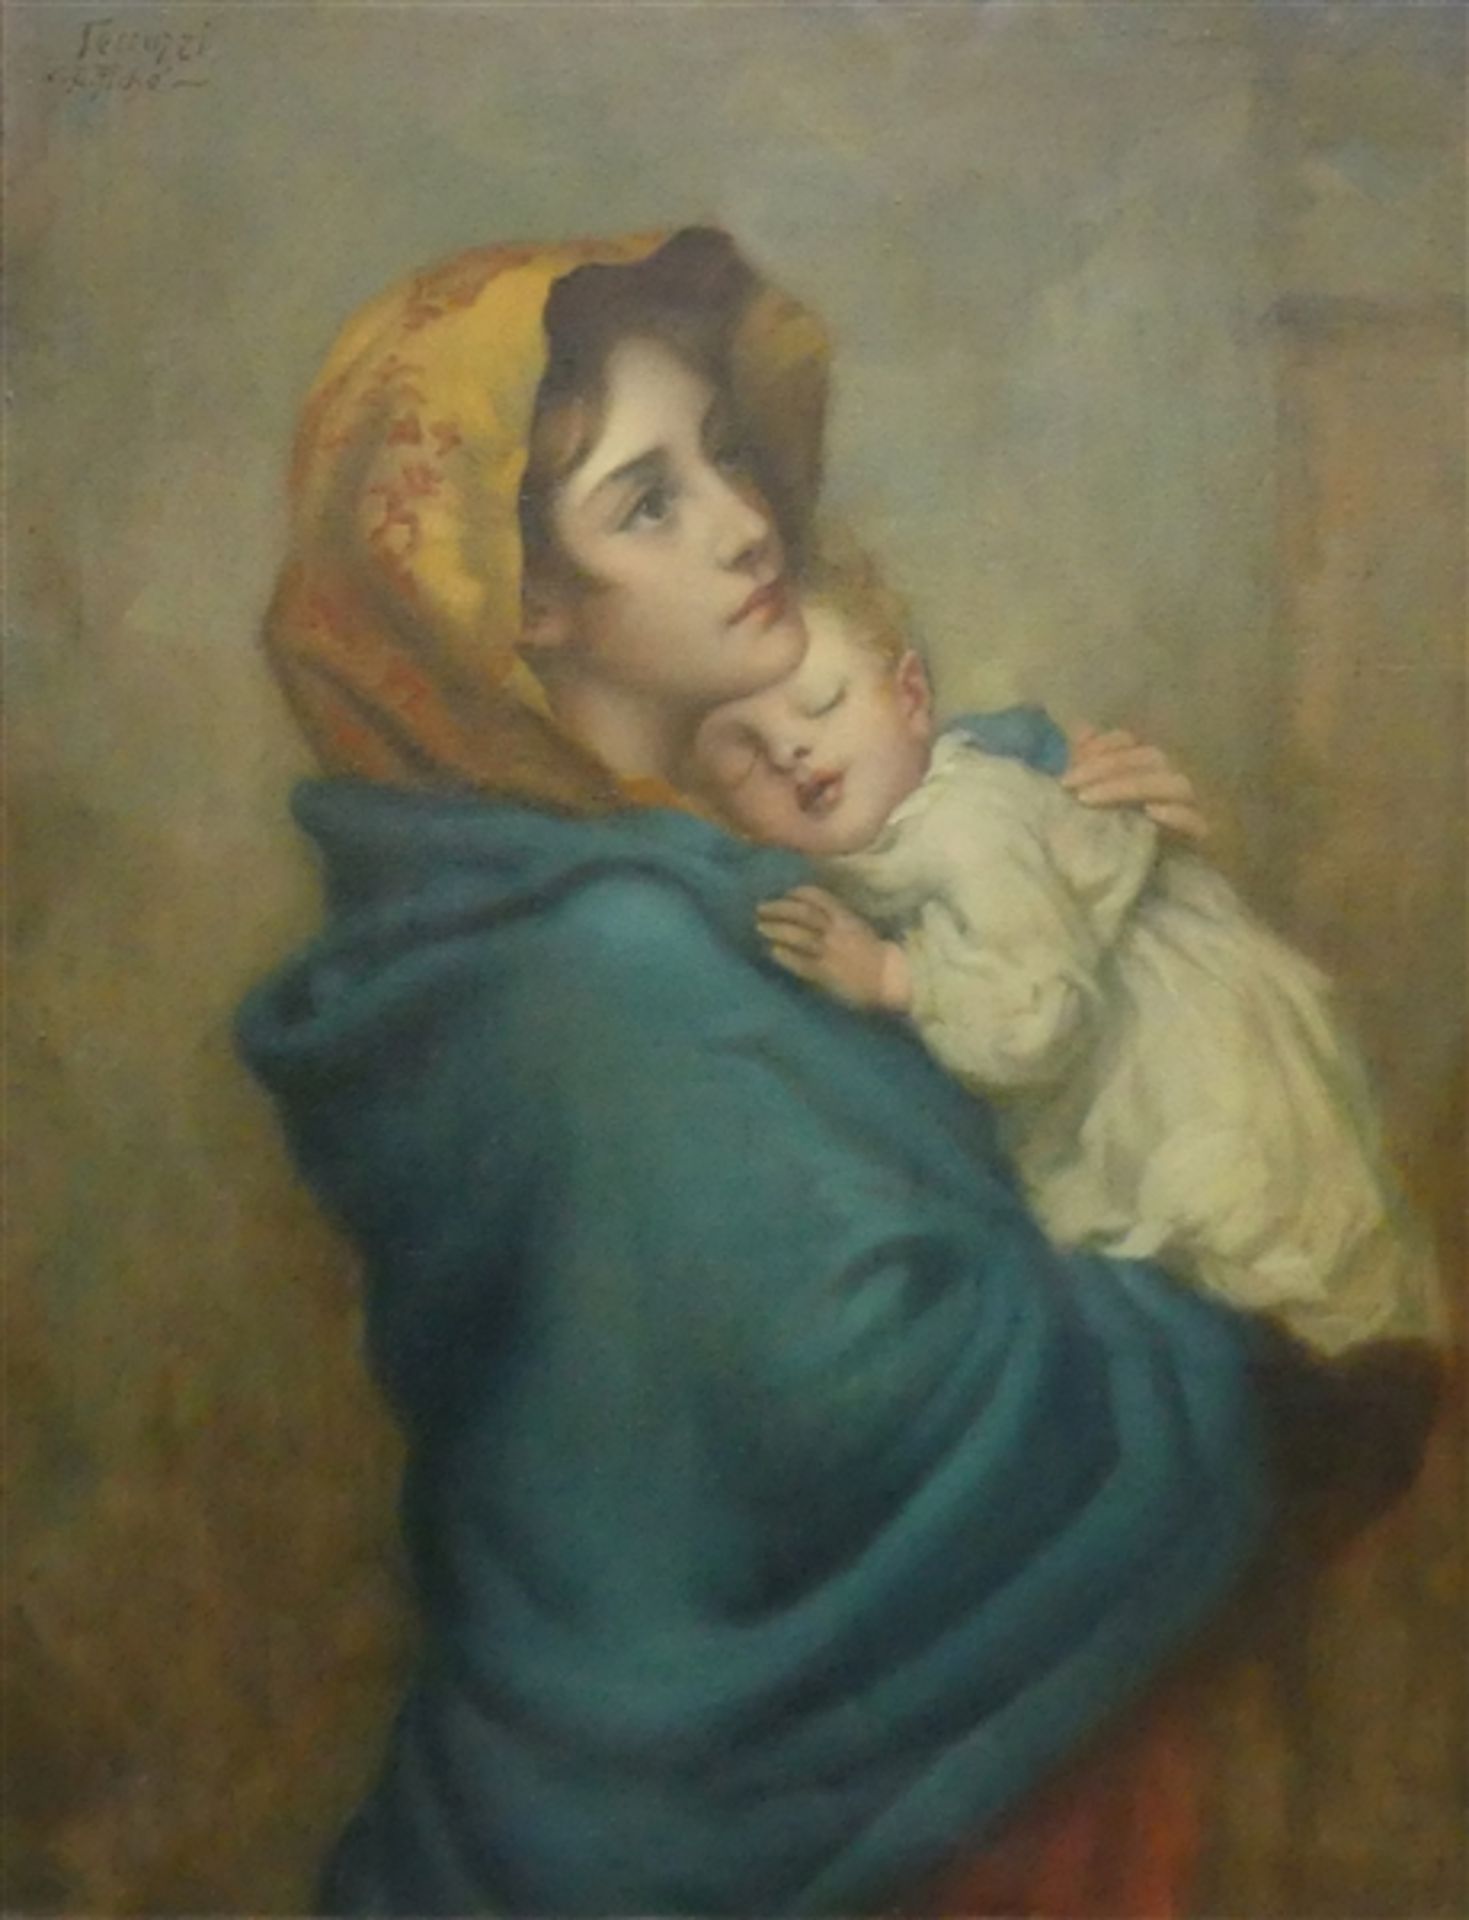 Kopist, um 1930Öl auf Leinen, Mutter mit Kind, links oben bezeichnet, Italien um 1930, 92x69 cm,